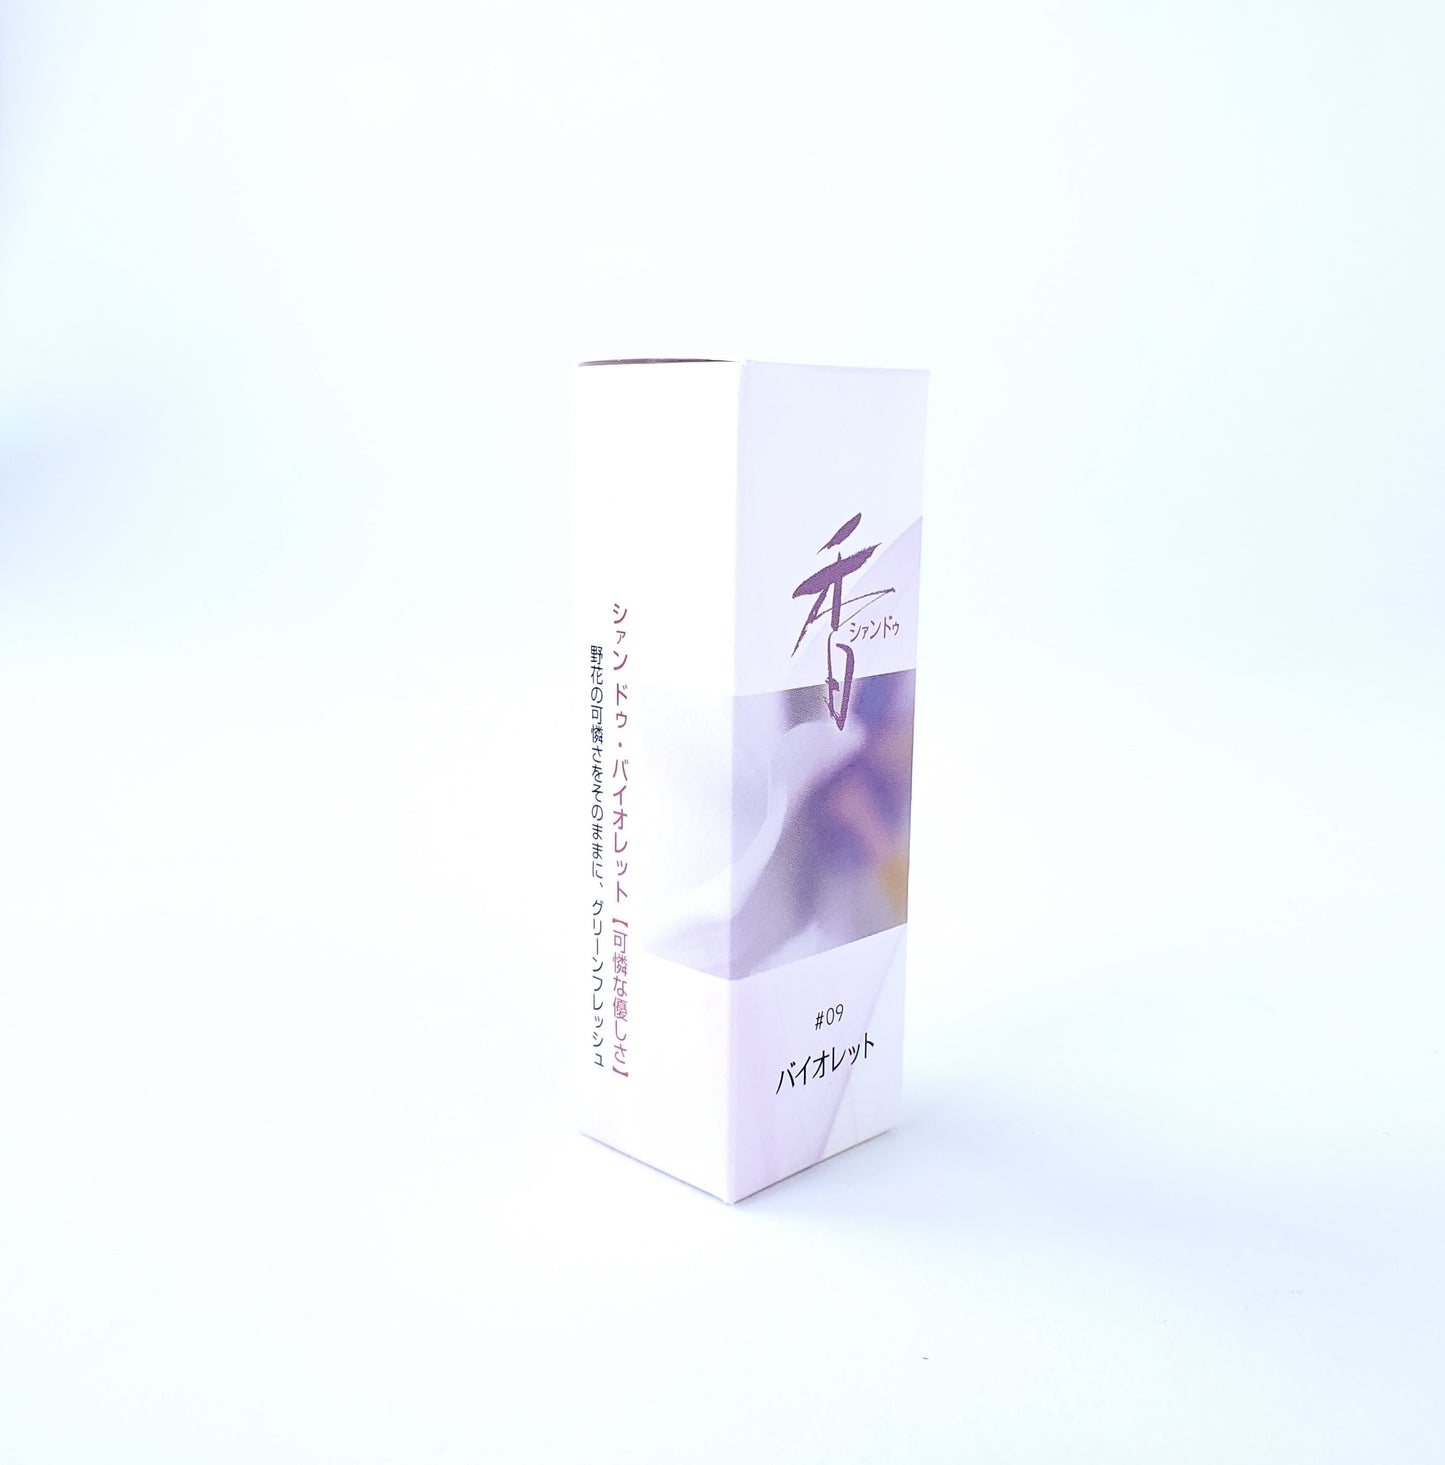 松栄堂のお香 シァンドゥ・バイオレット Xiang Do 京都 スティック アロマ インセンス 日本製